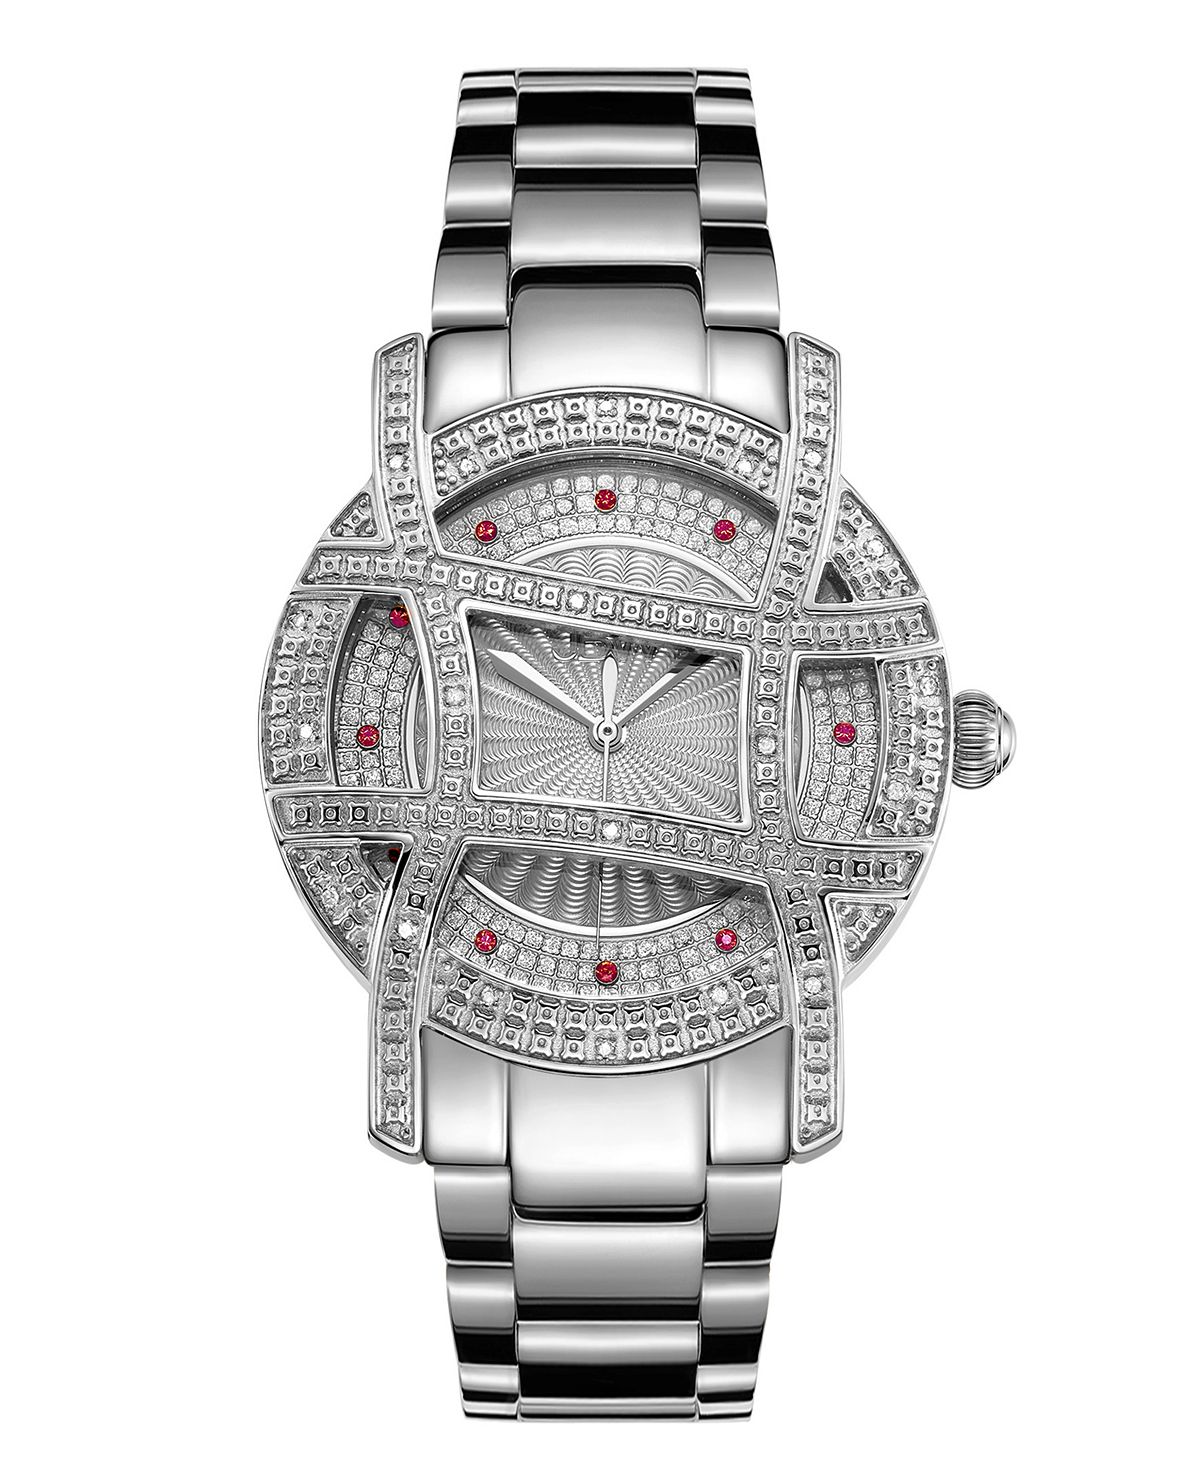 Женские часы Olympia серебристого цвета из нержавеющей стали, 38 мм Jbw женские двустрелочные часы из нержавеющей стали серебристого цвета 34 мм tommy hilfiger